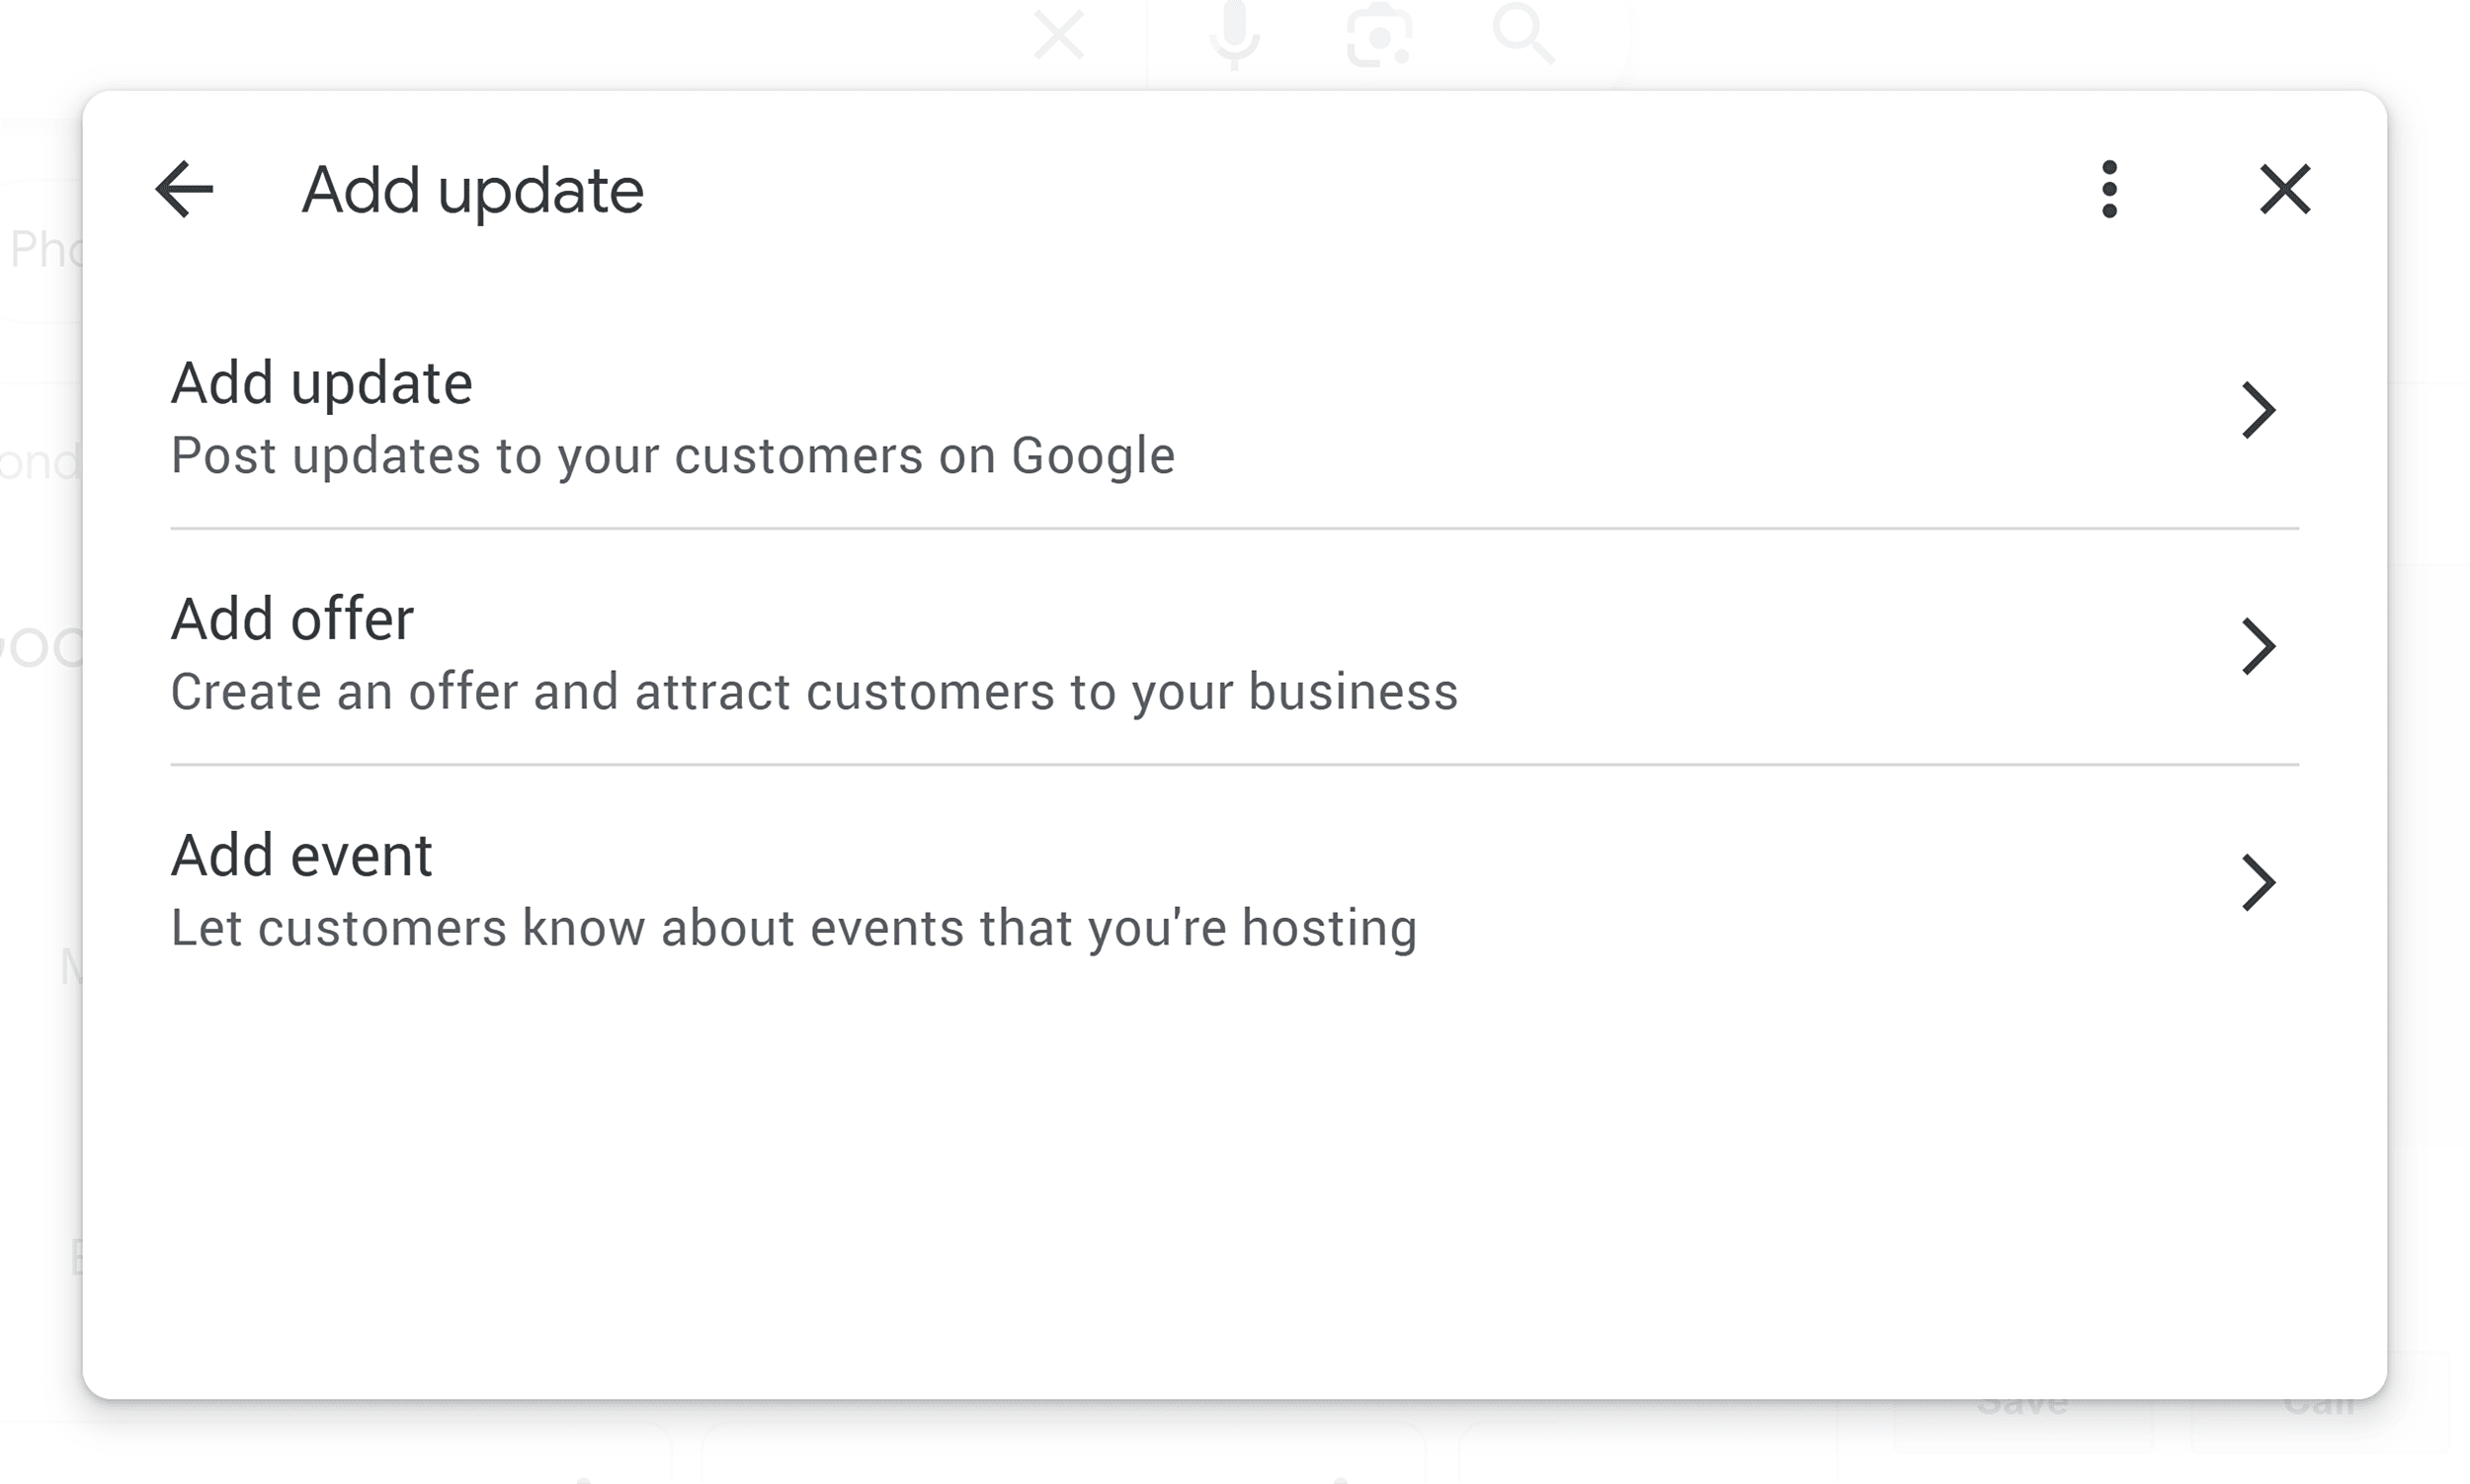 Add business update